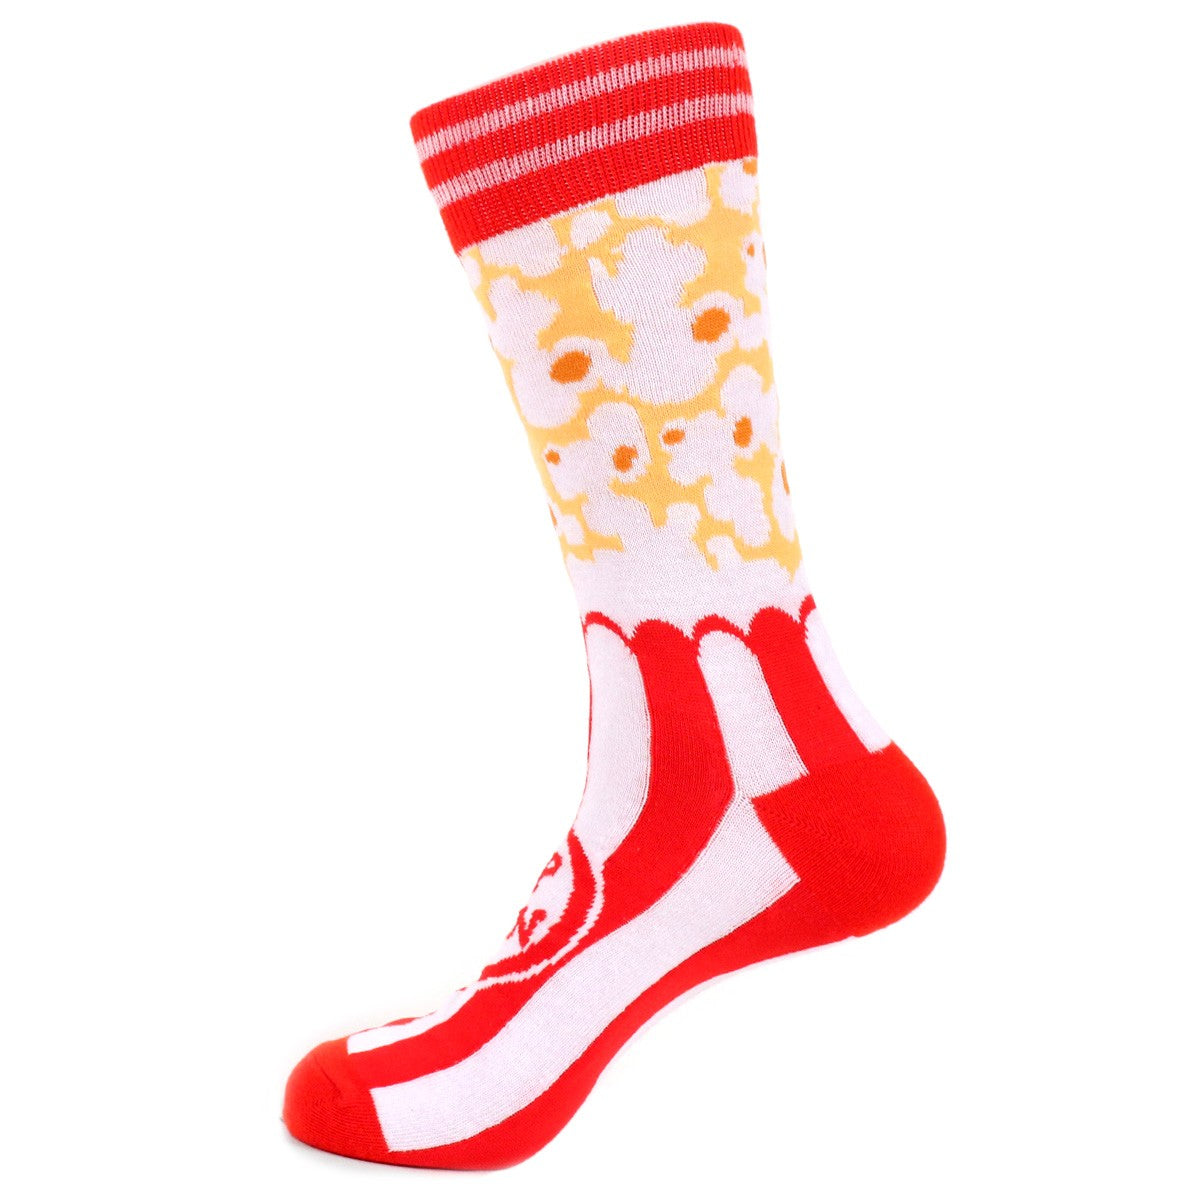 Men's Popcorn Socks